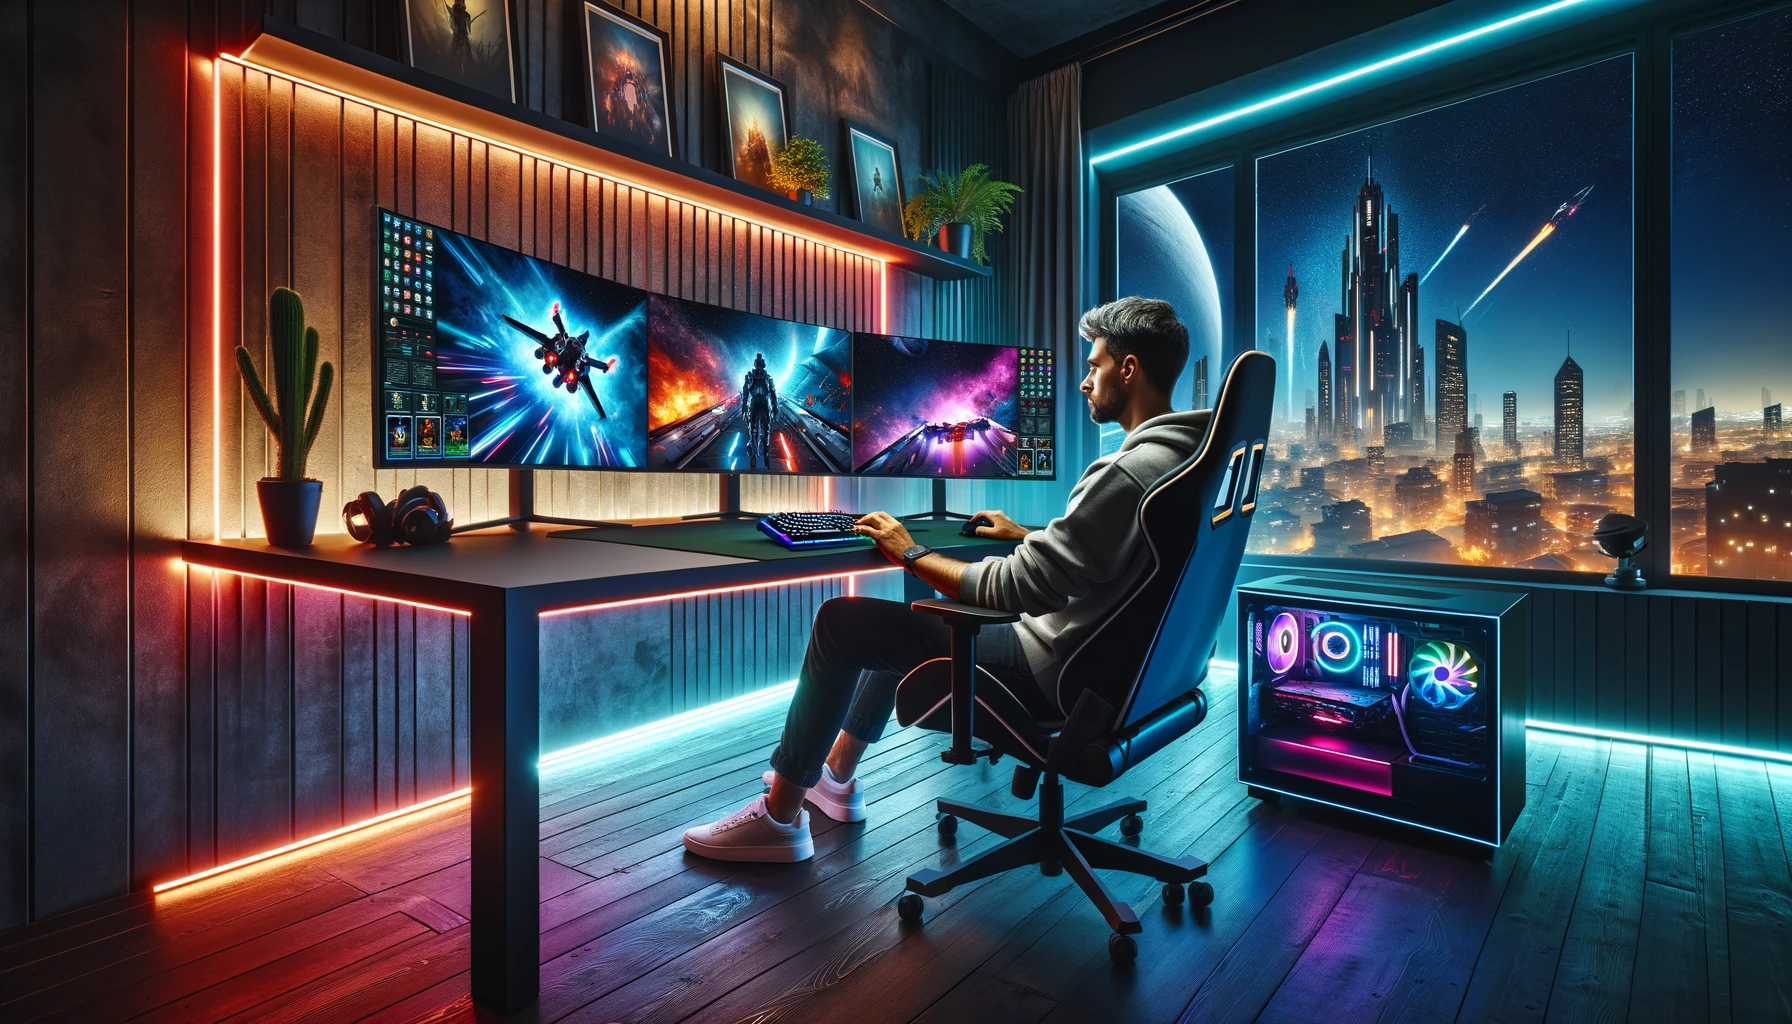 Man in modern gaming setup at night.